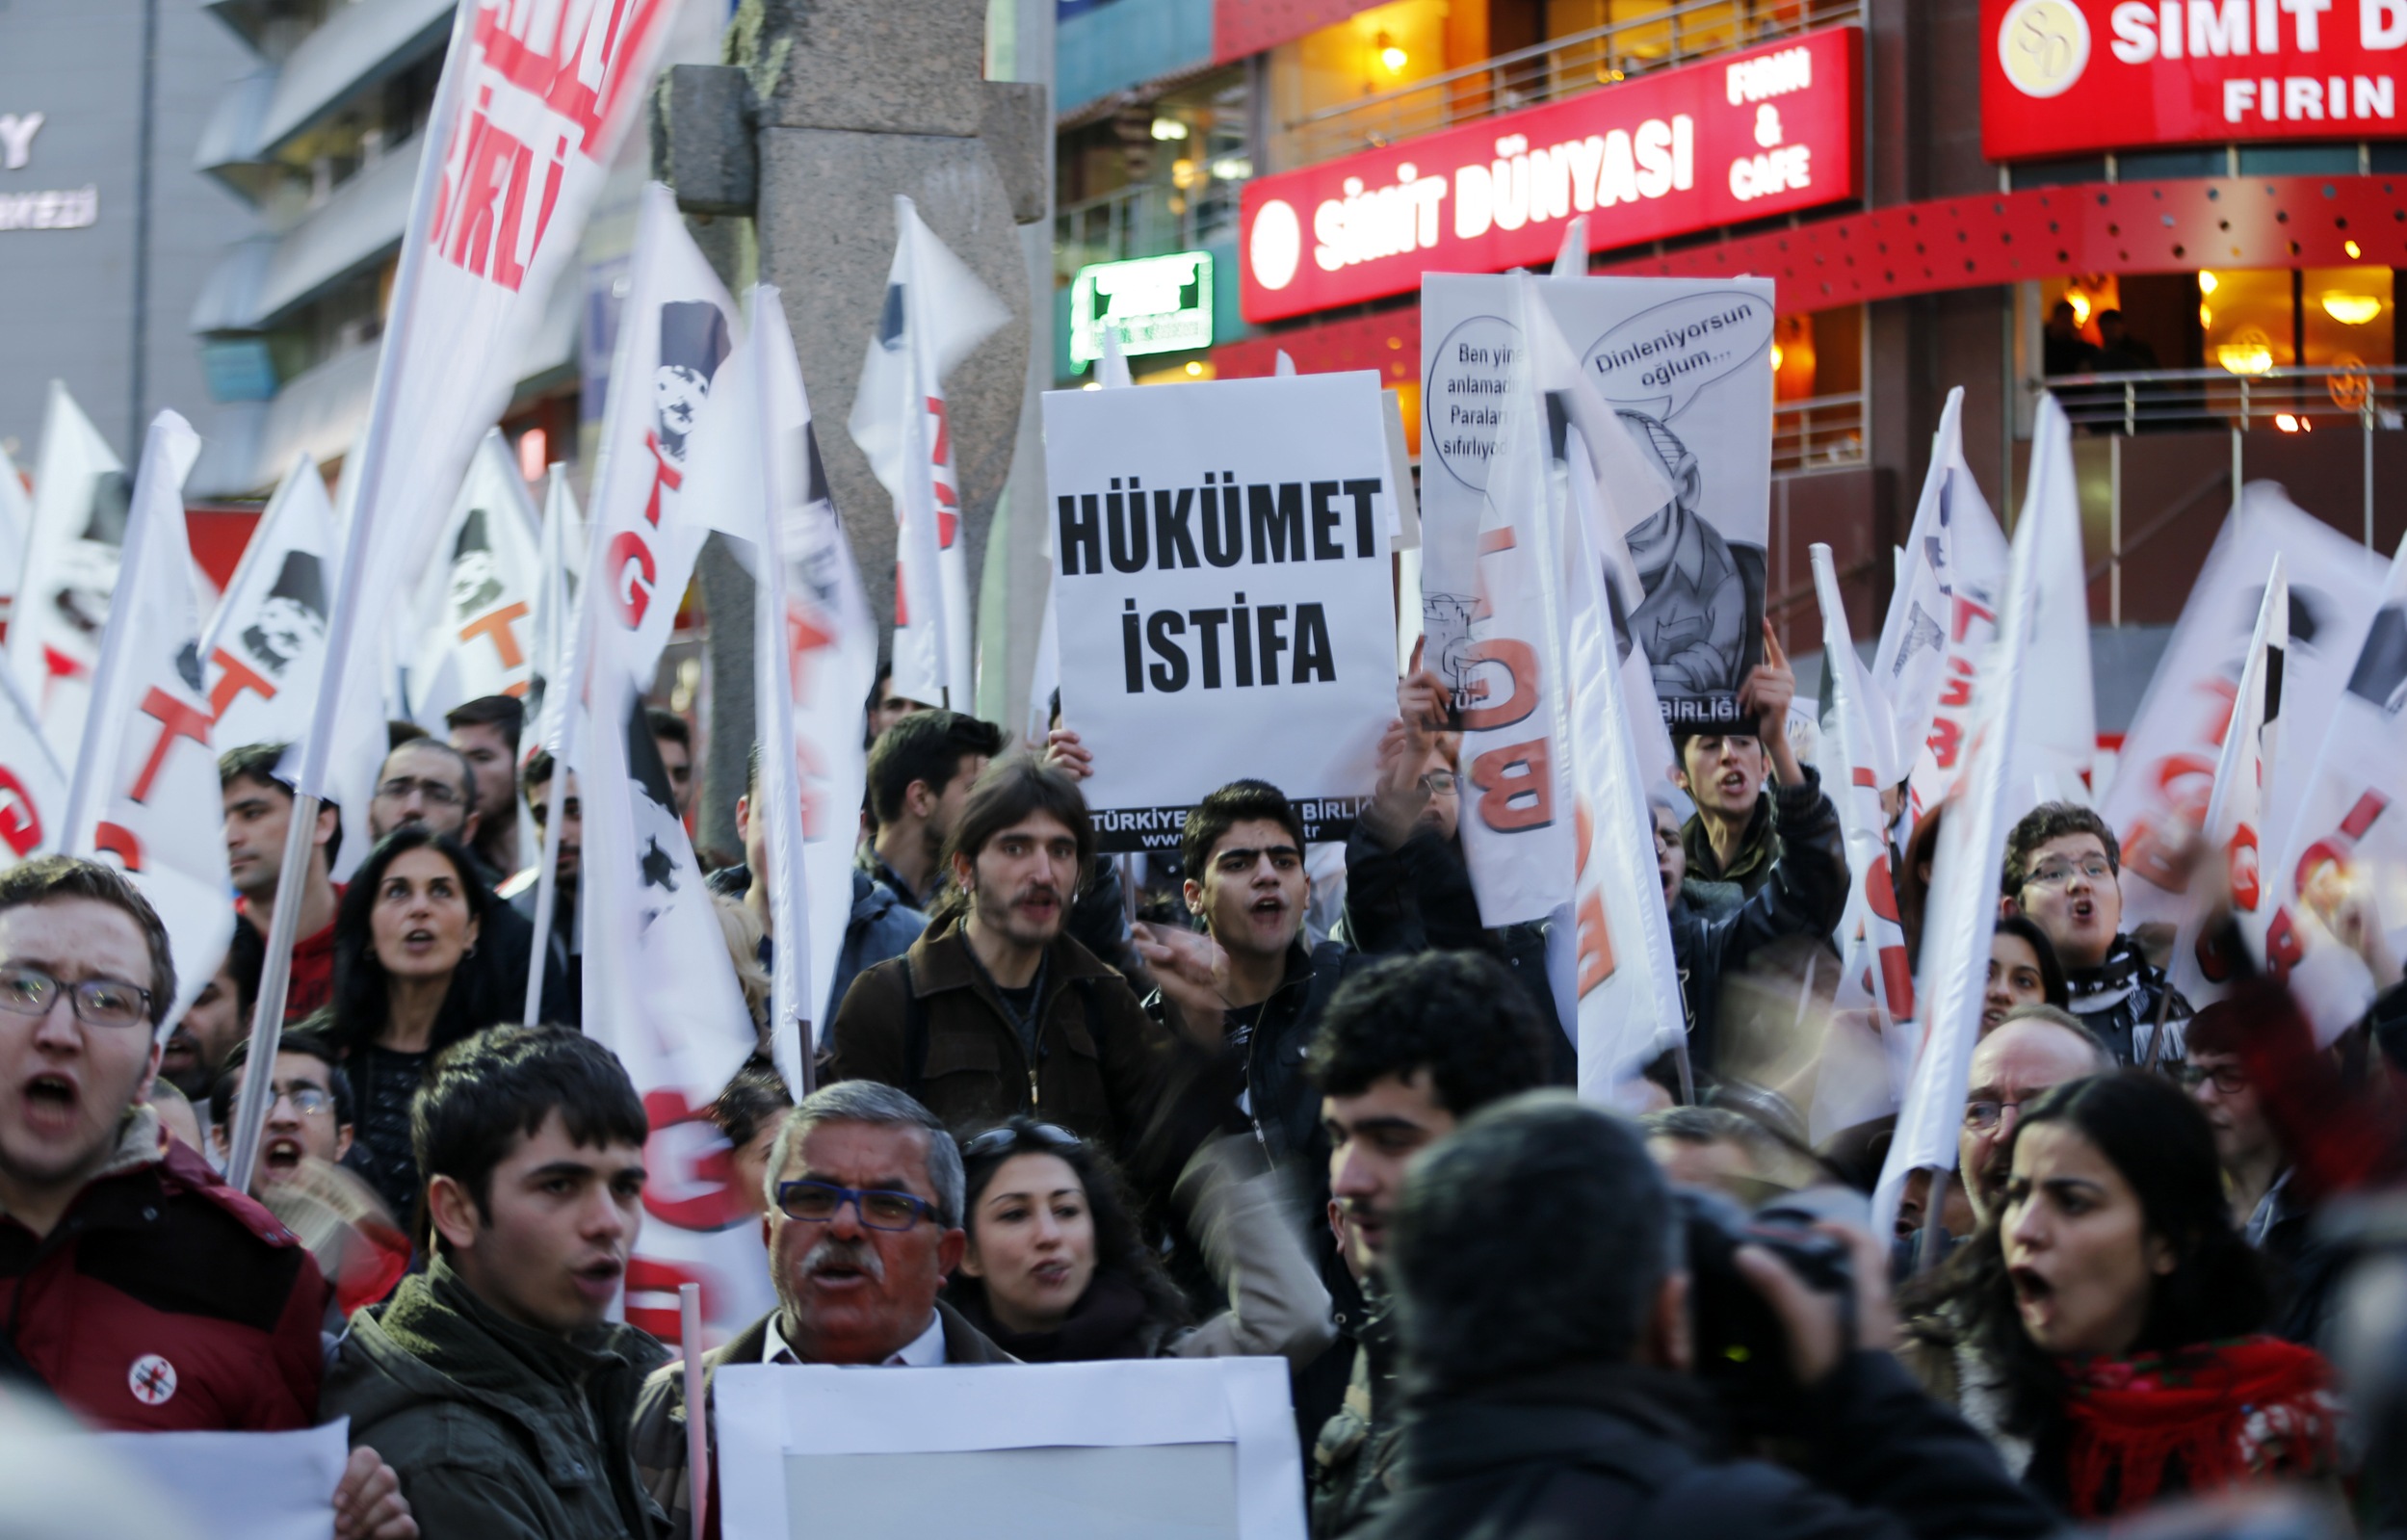 Το βίντεο της απόλυτης προπαγάνδας για τον τούρκο Πρωθυπουργό